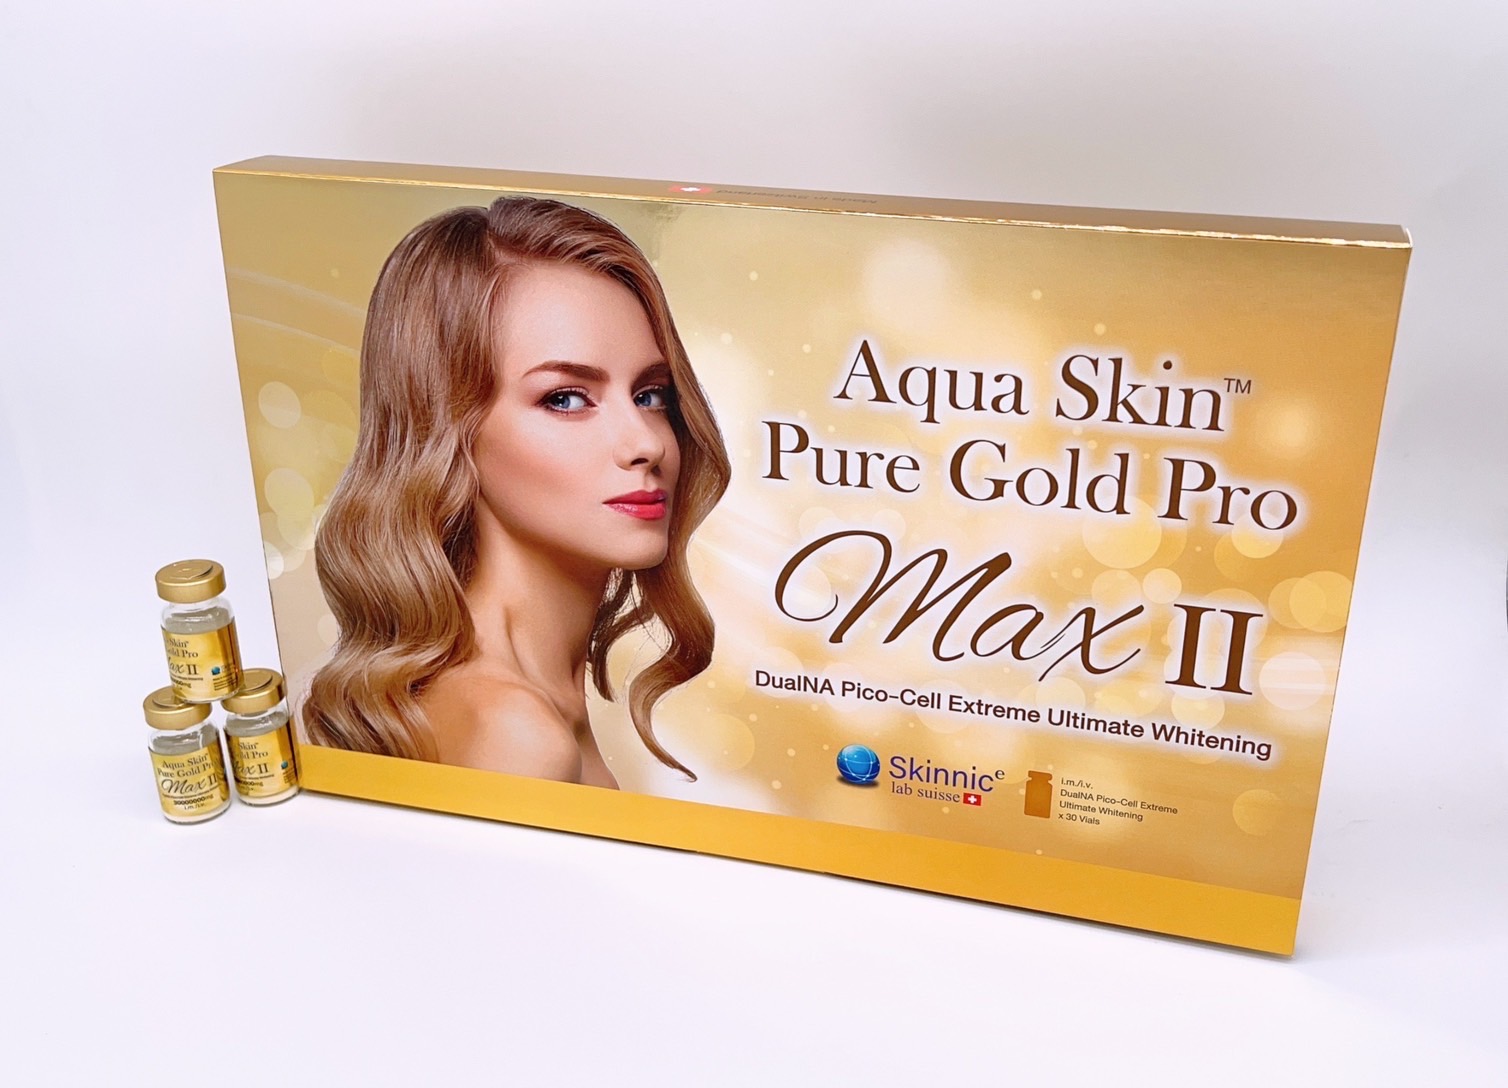 Aqua Skin Pure Gold Pro Max ll